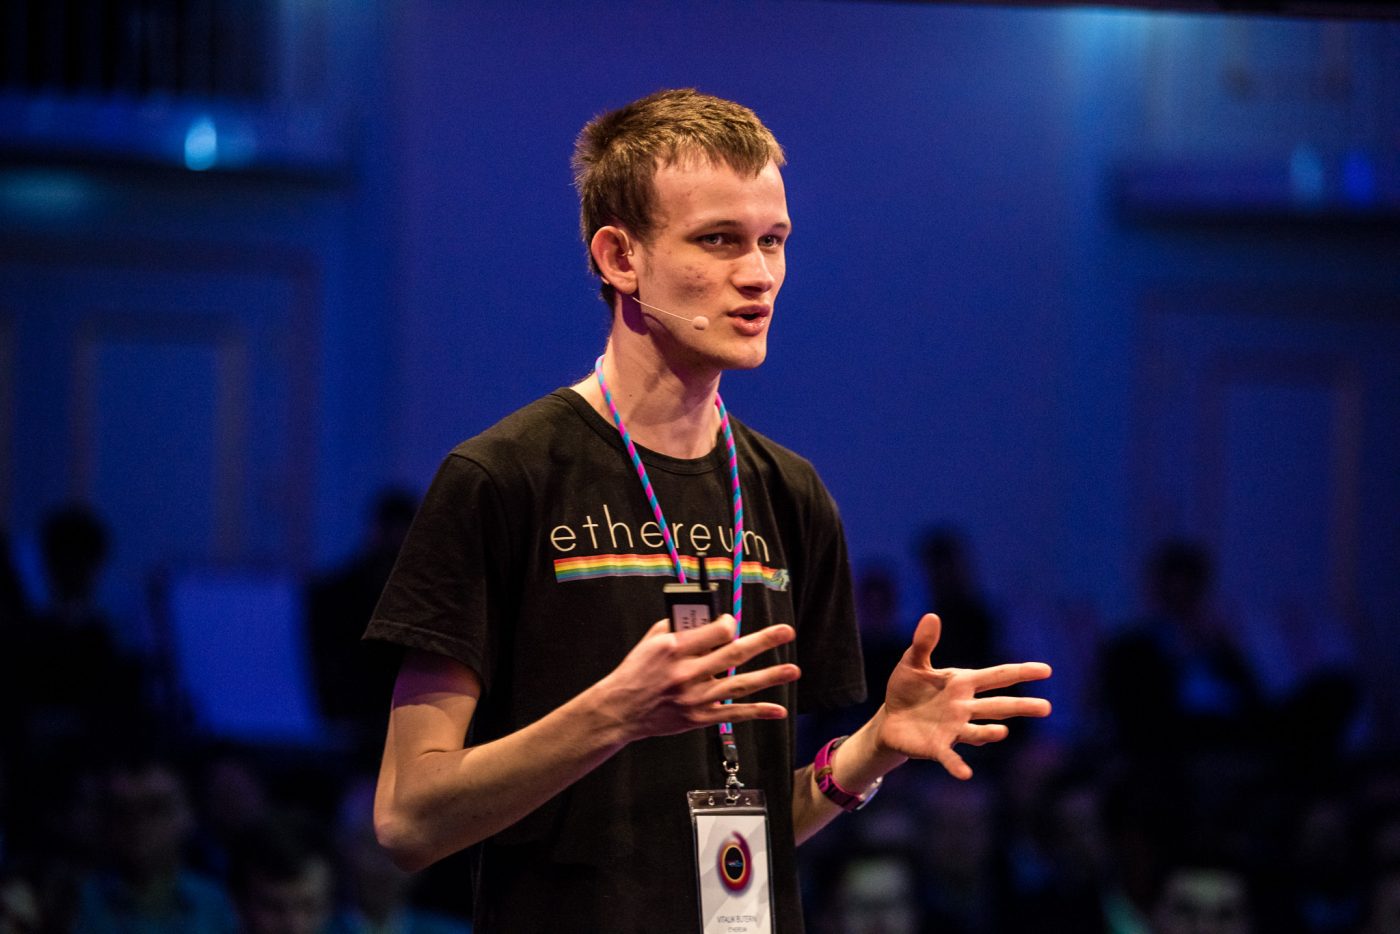 ویتالیک بوترین، برنامه نویس 27 ساله روسی- کانادایی در سال 2013 و زمانی که تنها 19 سال سن داشت رمز ارز موسوم به اتریوم (ethereum) را اختراع کرد.